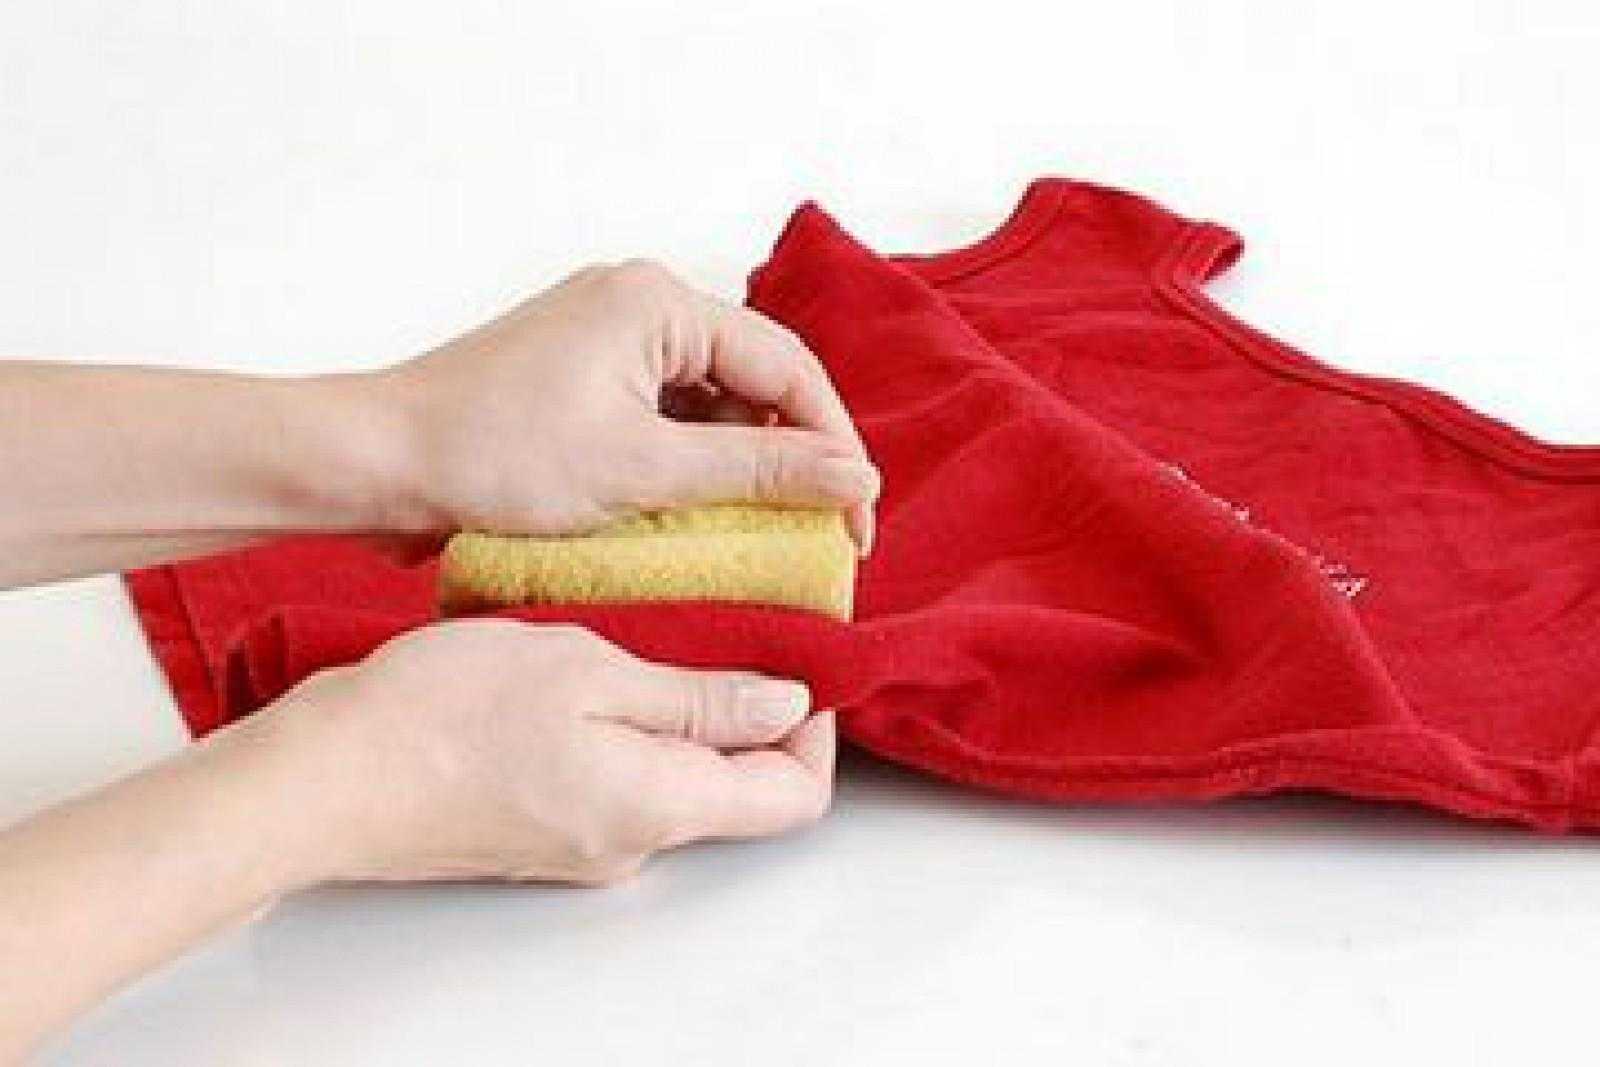 Отстирать борщ с одежды. как отстирать пятна от свеклы? уксус и лимонная кислота